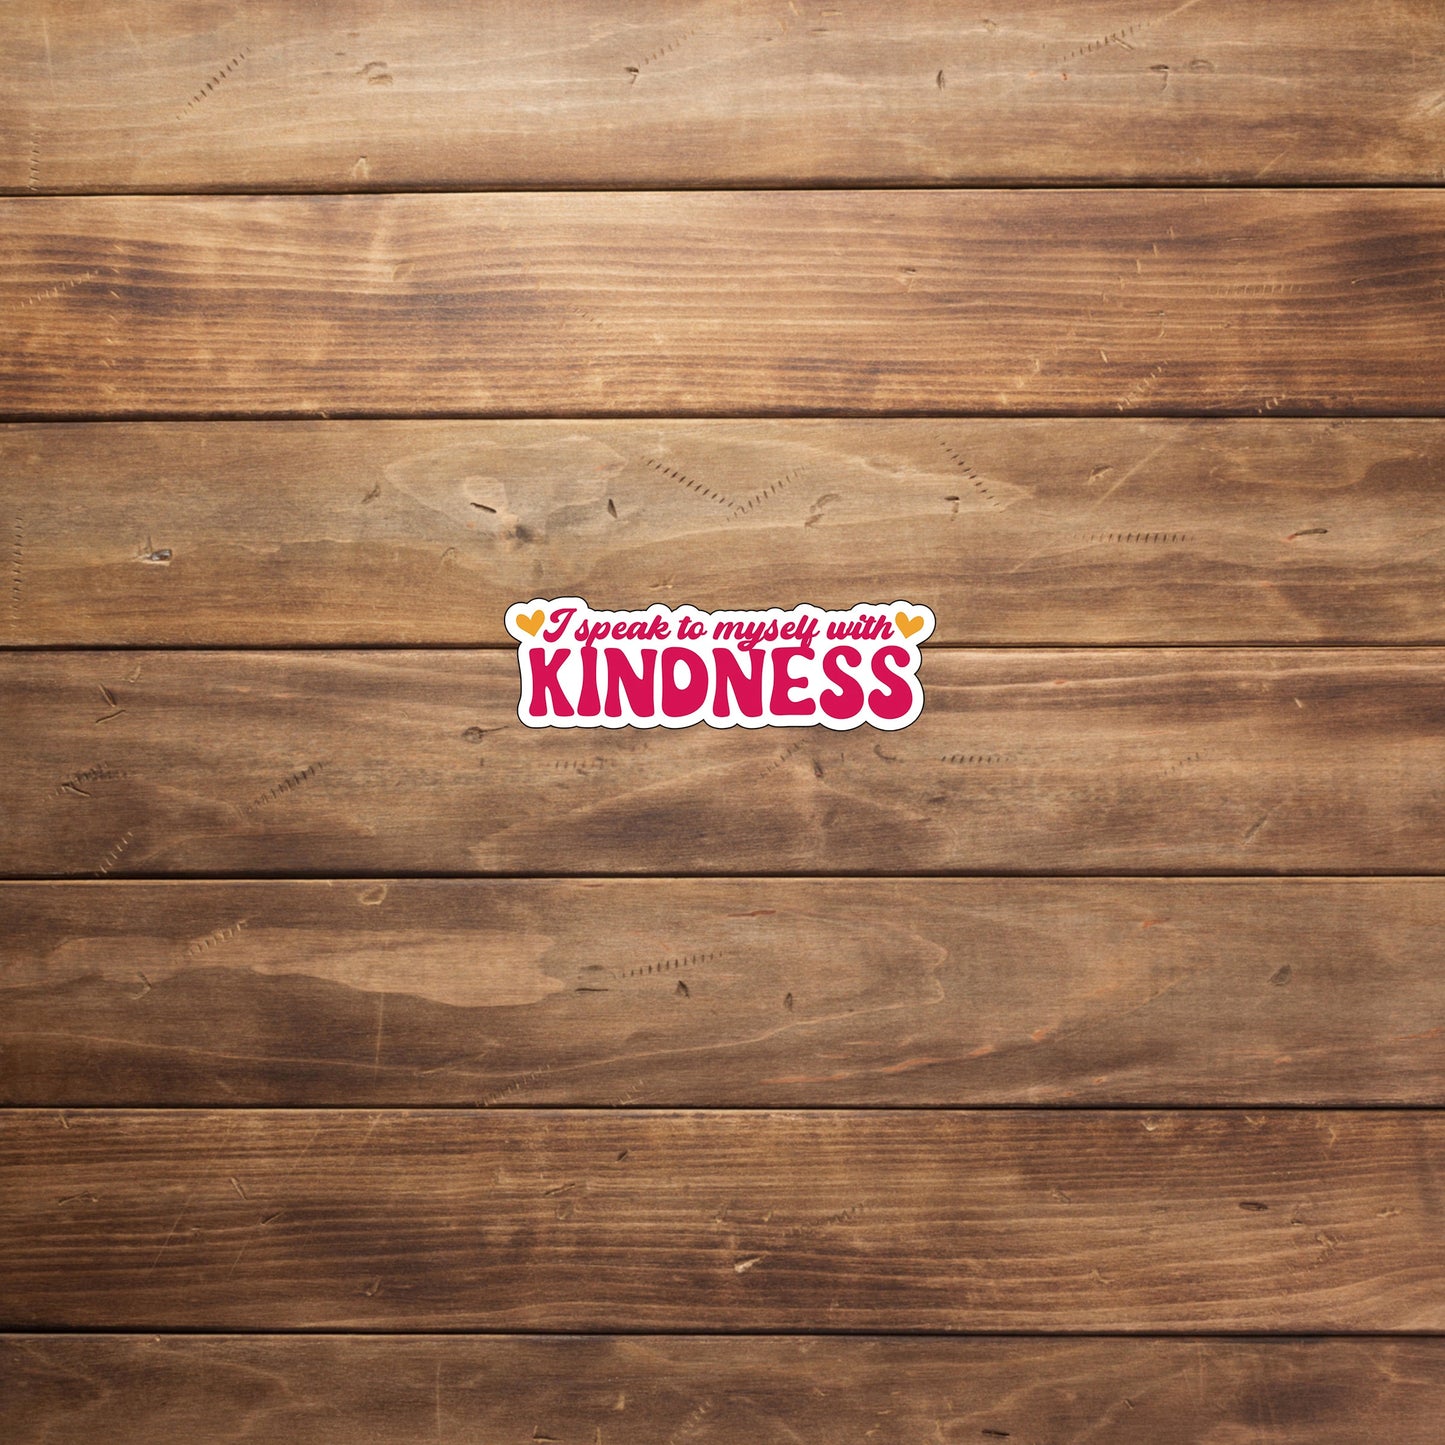 I speak to myself with kindness  Sticker,  Vinyl sticker, laptop sticker, Tablet sticker